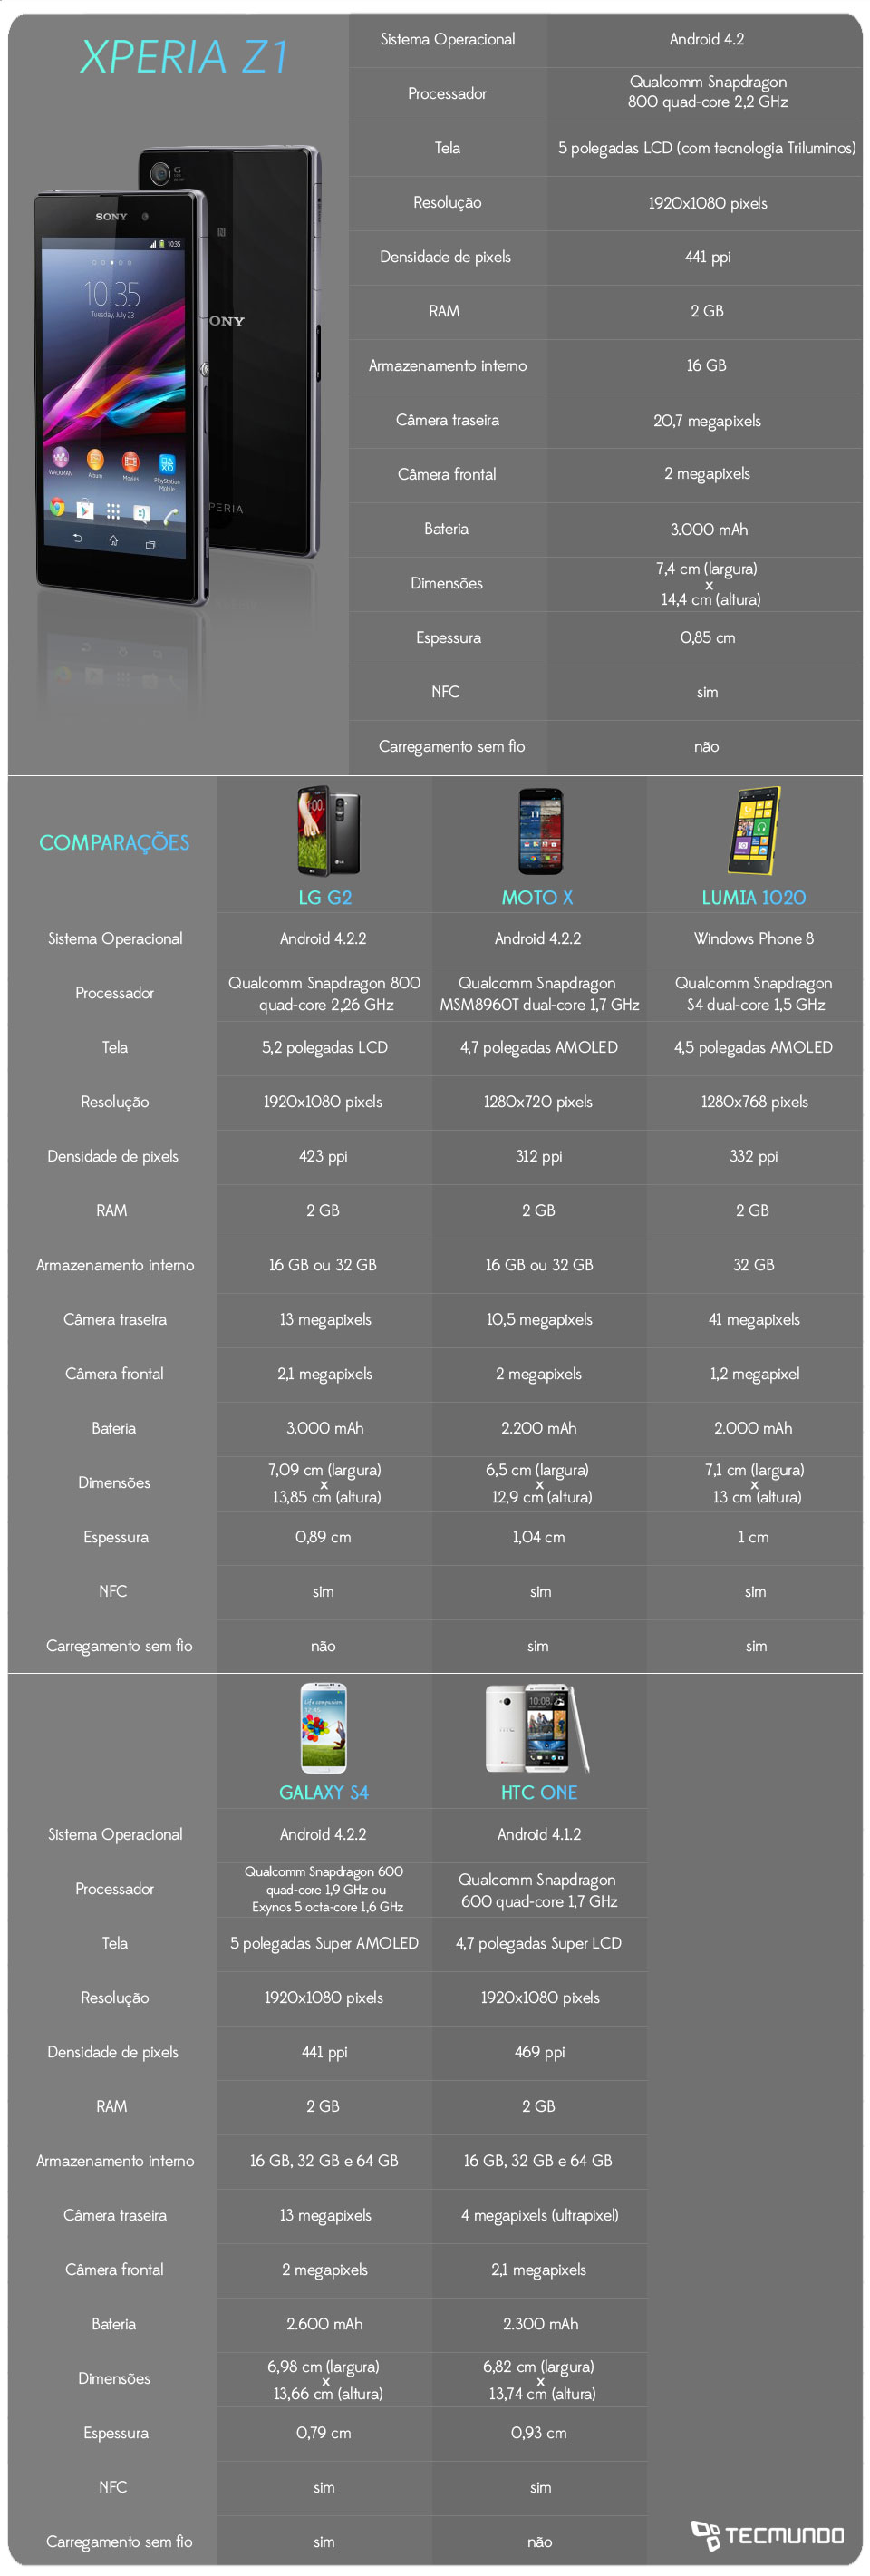 Infográfico - Comparação: Sony Xperia Z1 contra os principais smartphones do mercado